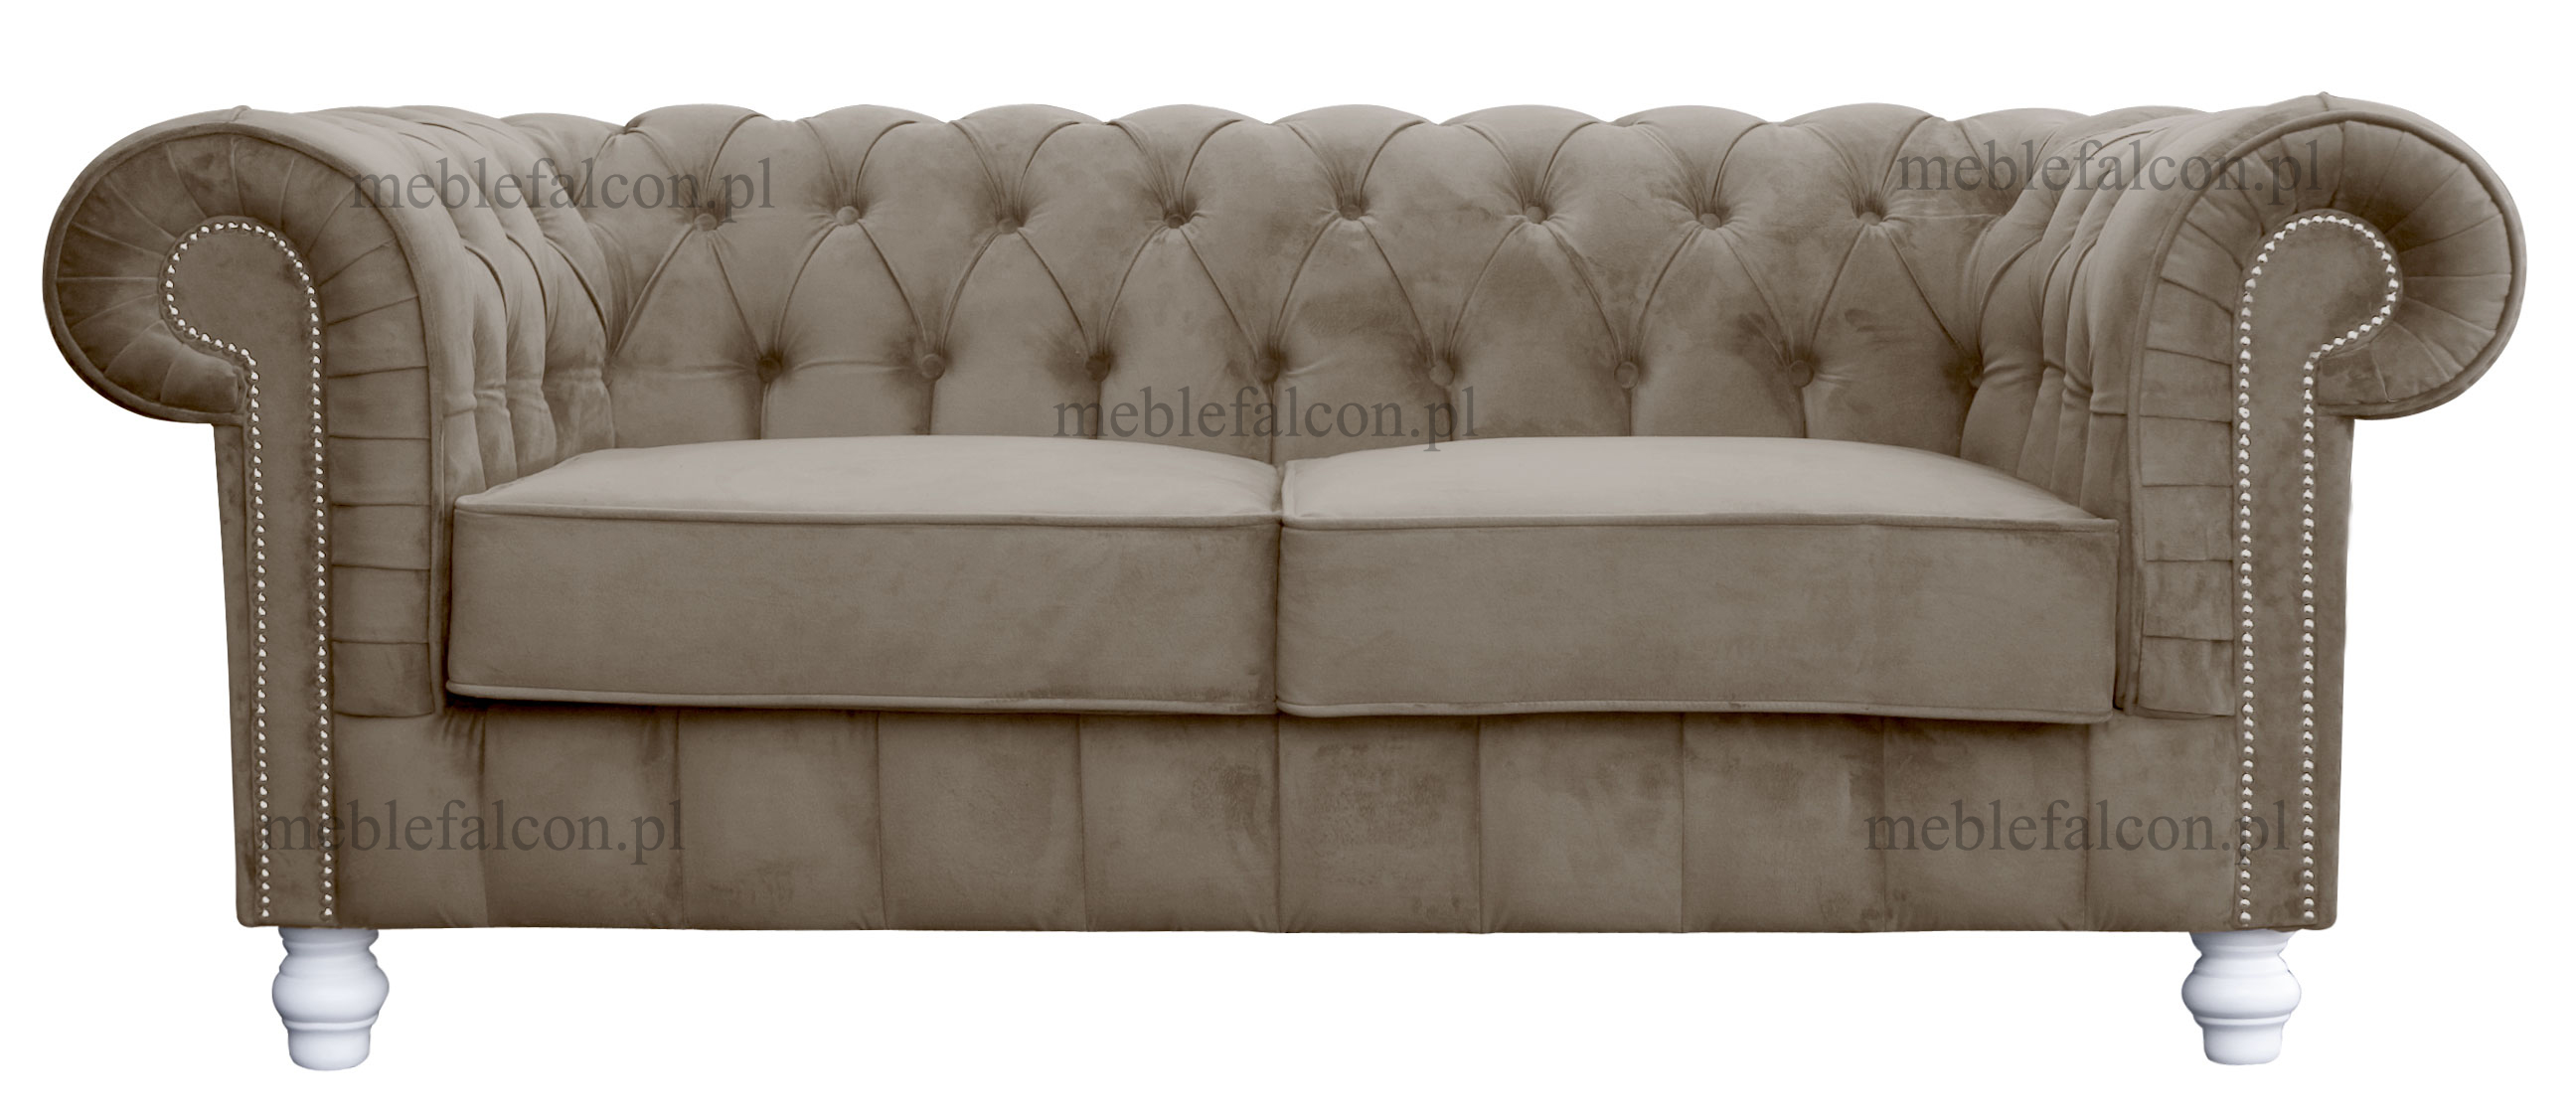 piekna sofa w stylu chesterfield pikowane oparcie z guzikami sofa salonowa ozdobna wygodne siedzisko